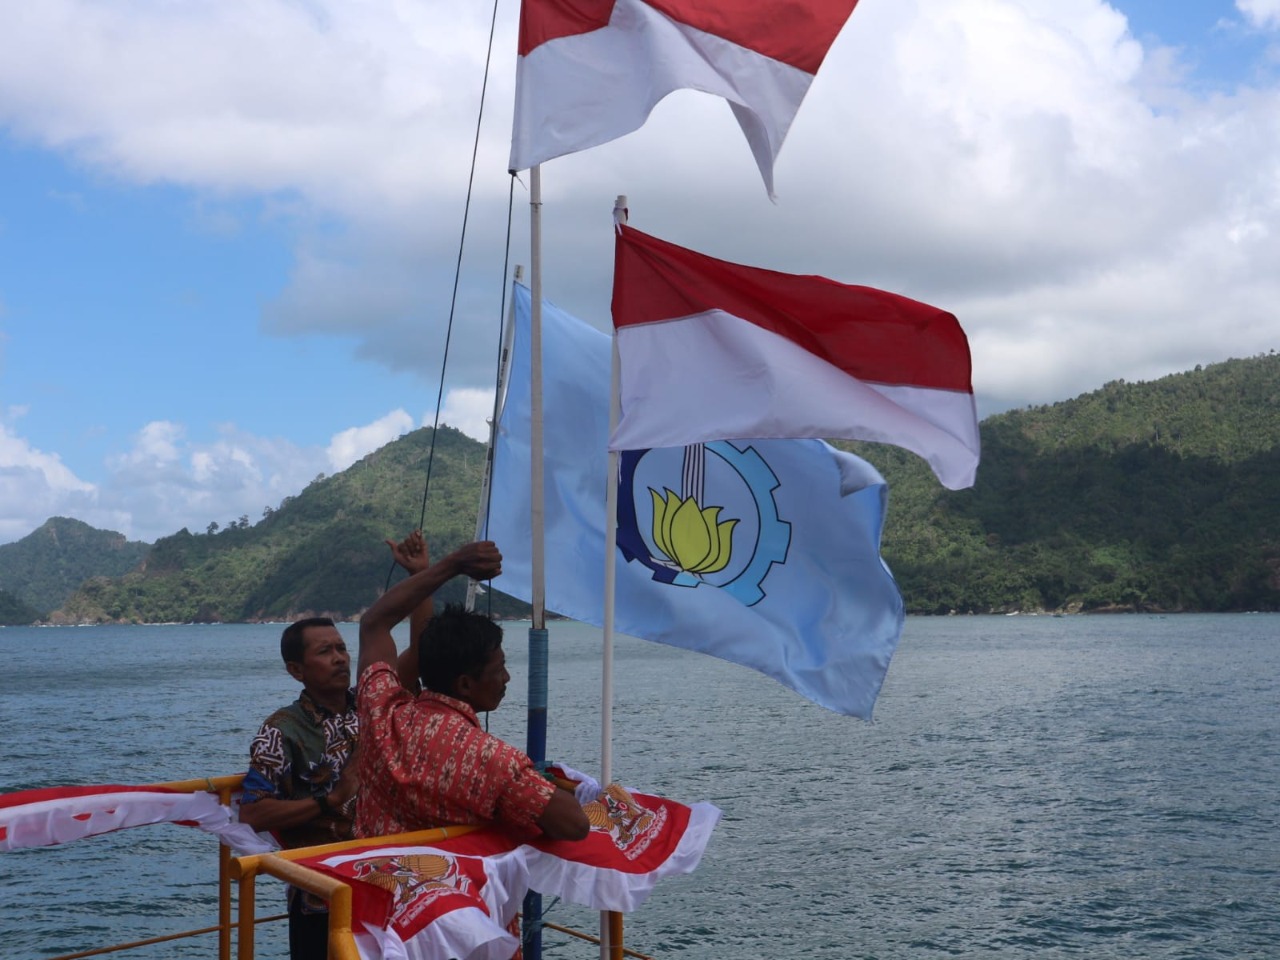 Upacara pengibaran bendera merah putih memperingati HUT ke-77 Kemerdekaan Indonesia di atas Ocean FarmITS yang terletak di kawasan perairan Sendang Biru, Malang